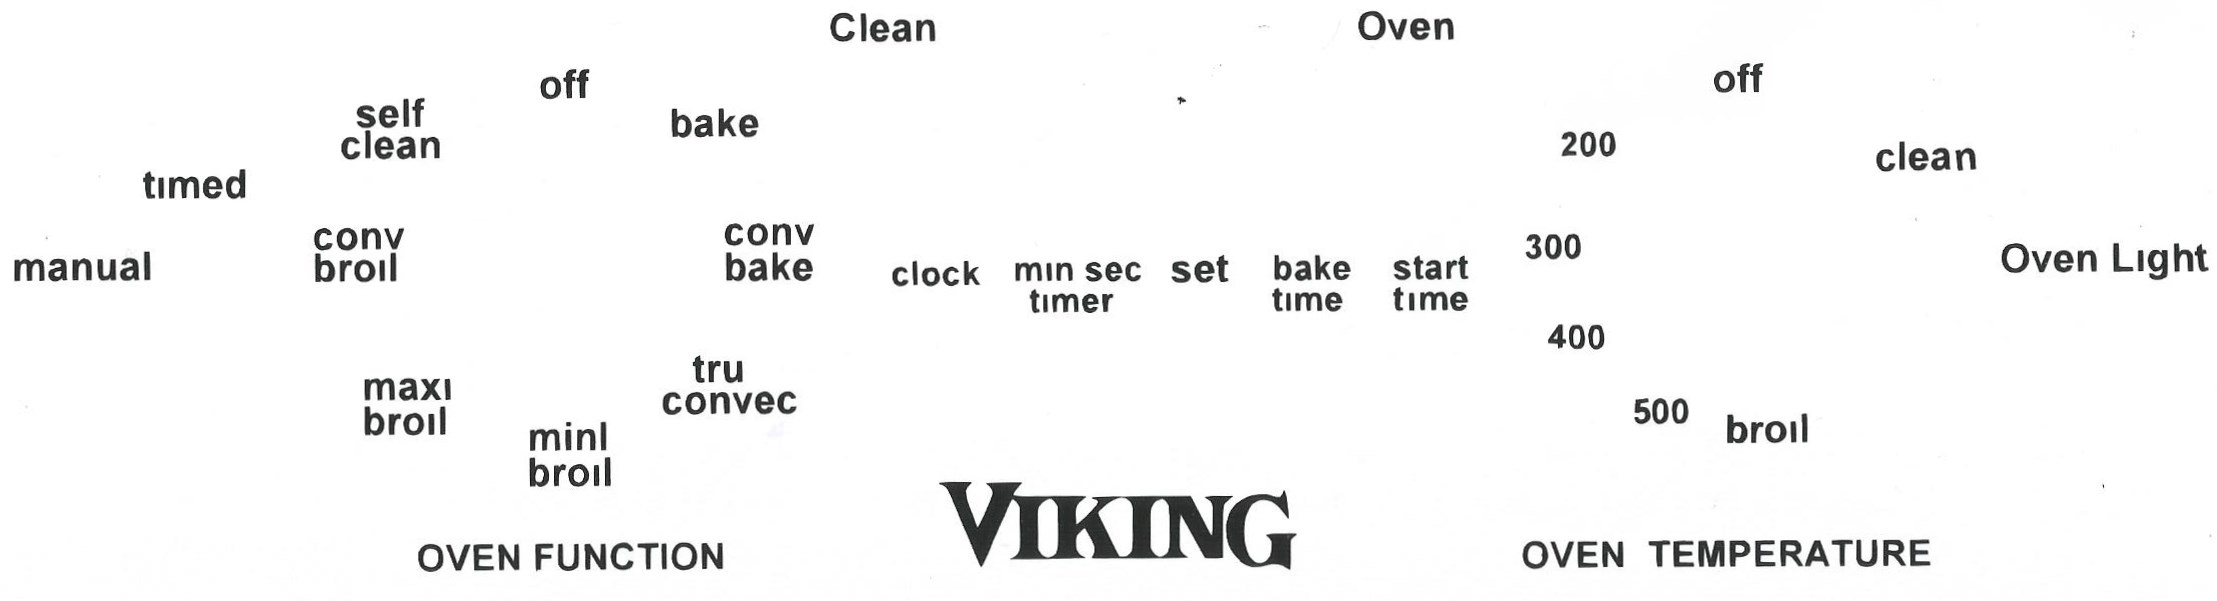 viking oven decals